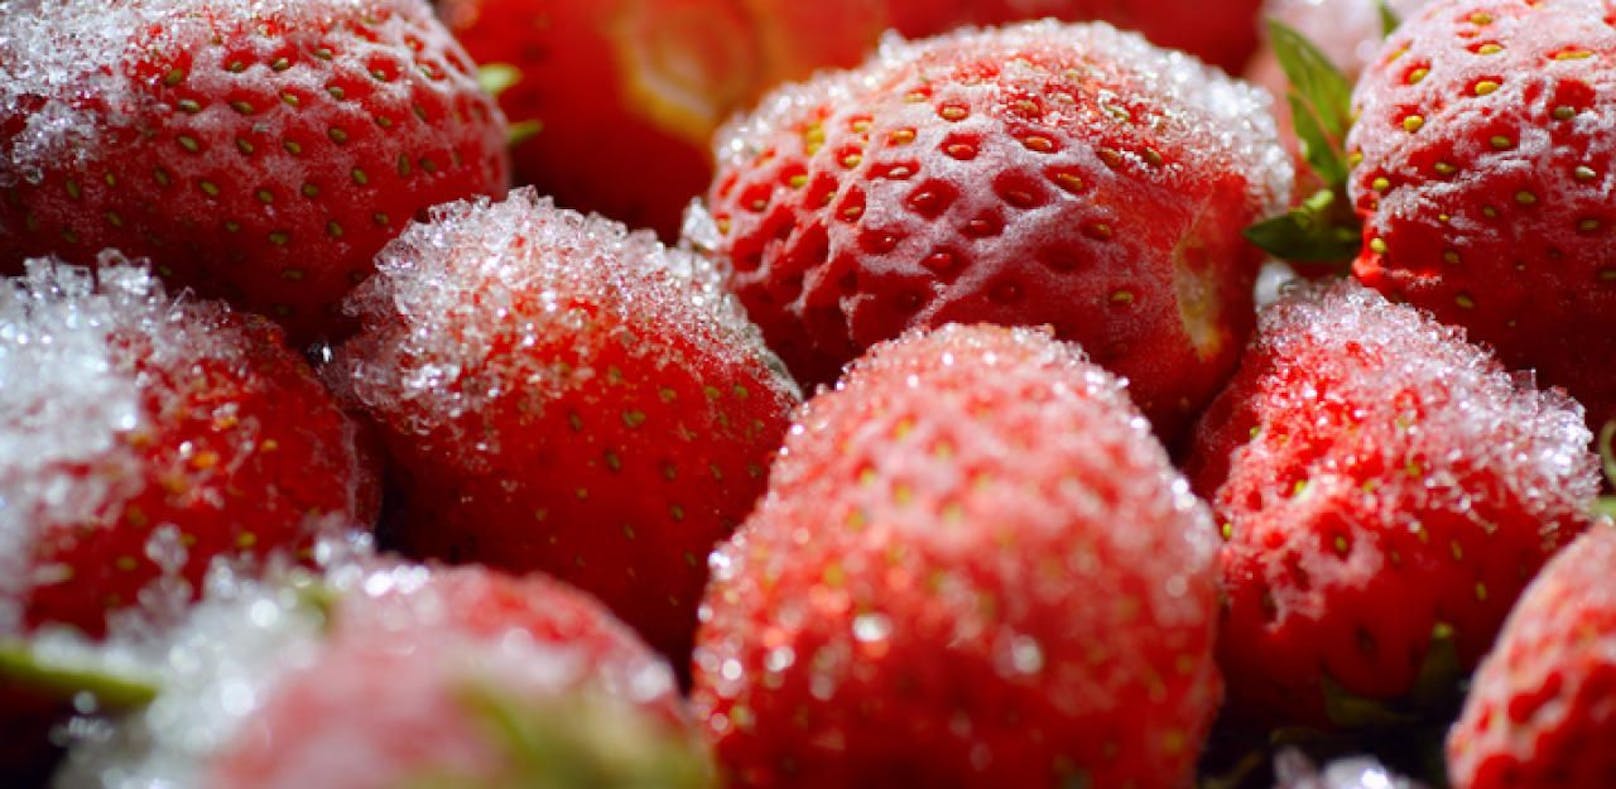 Symbolbild von Erdbeeren.